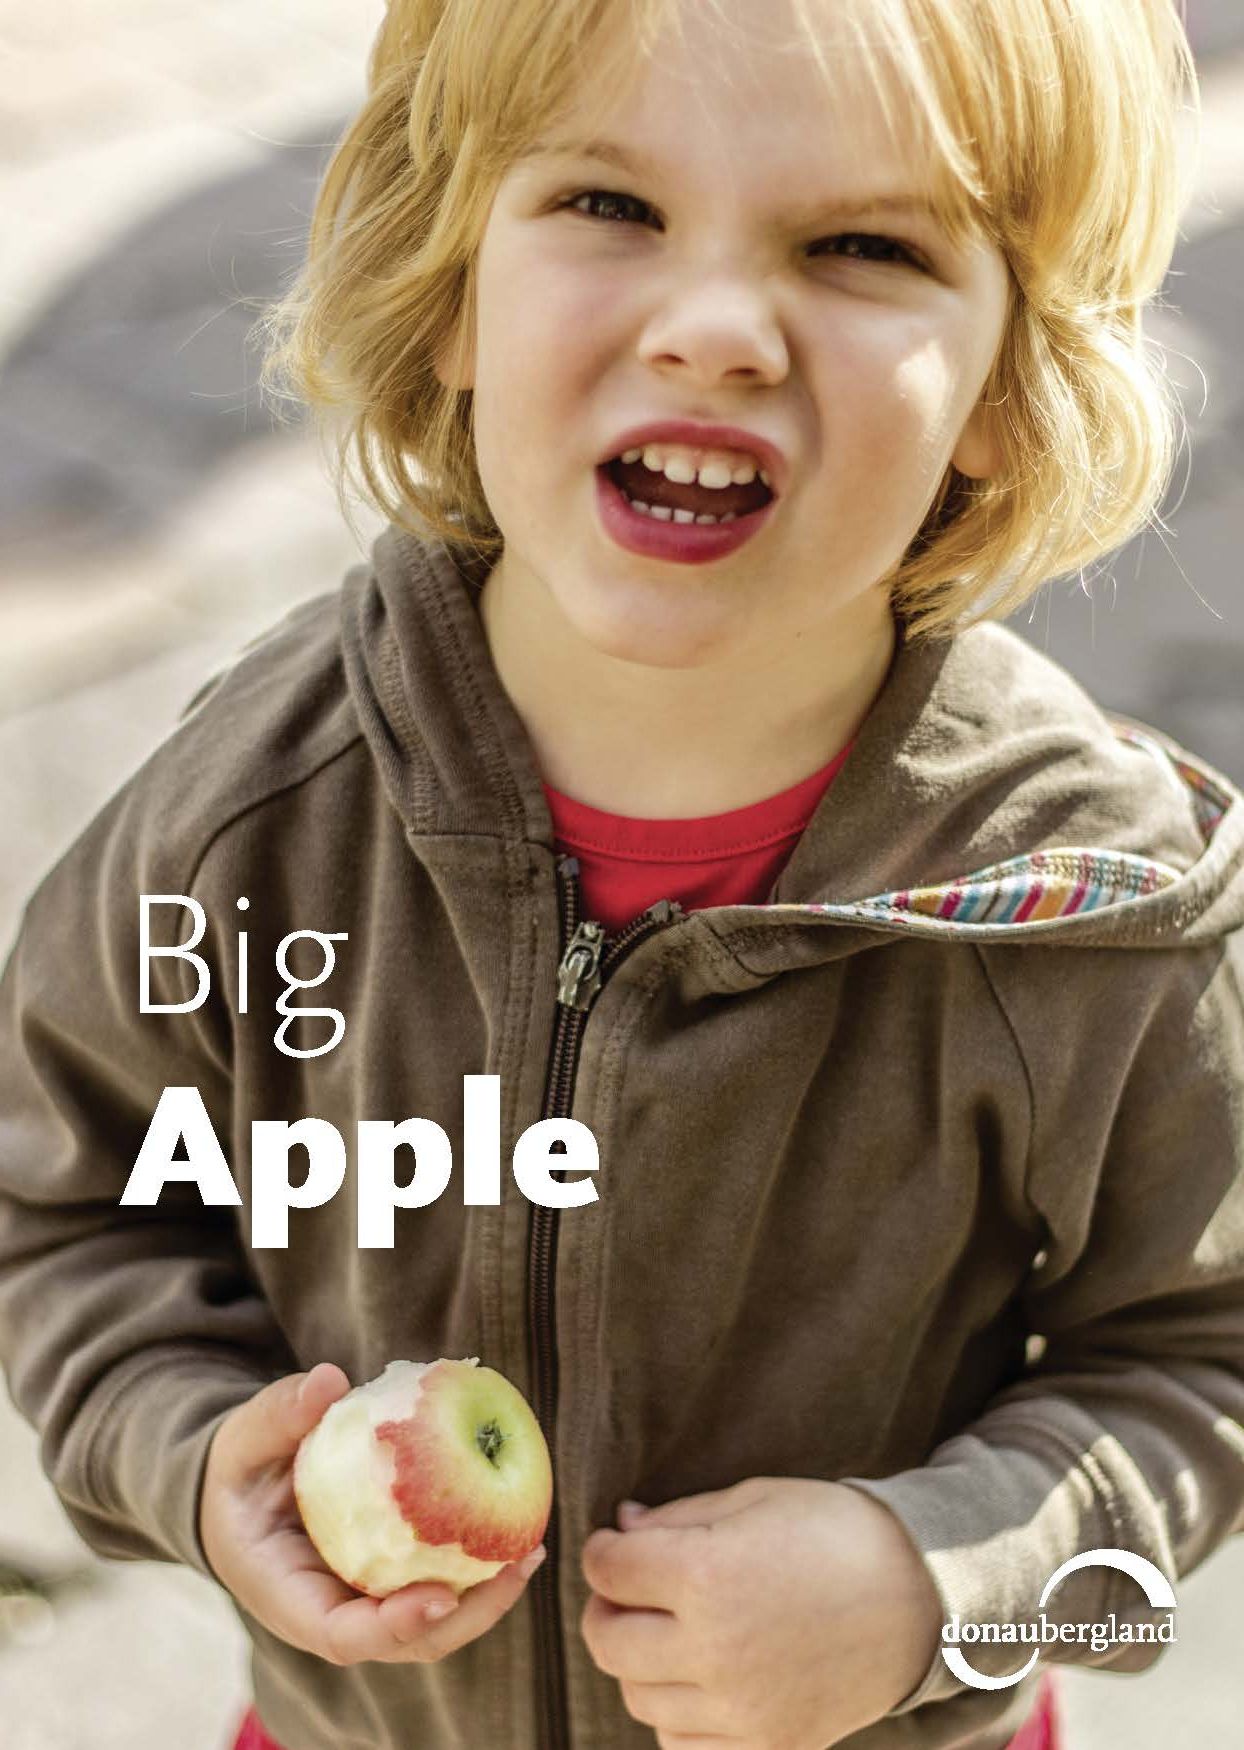 Donaubergland Postkartenmotiv mit Kind das einen angebissenen Apfel in der Hand hält.